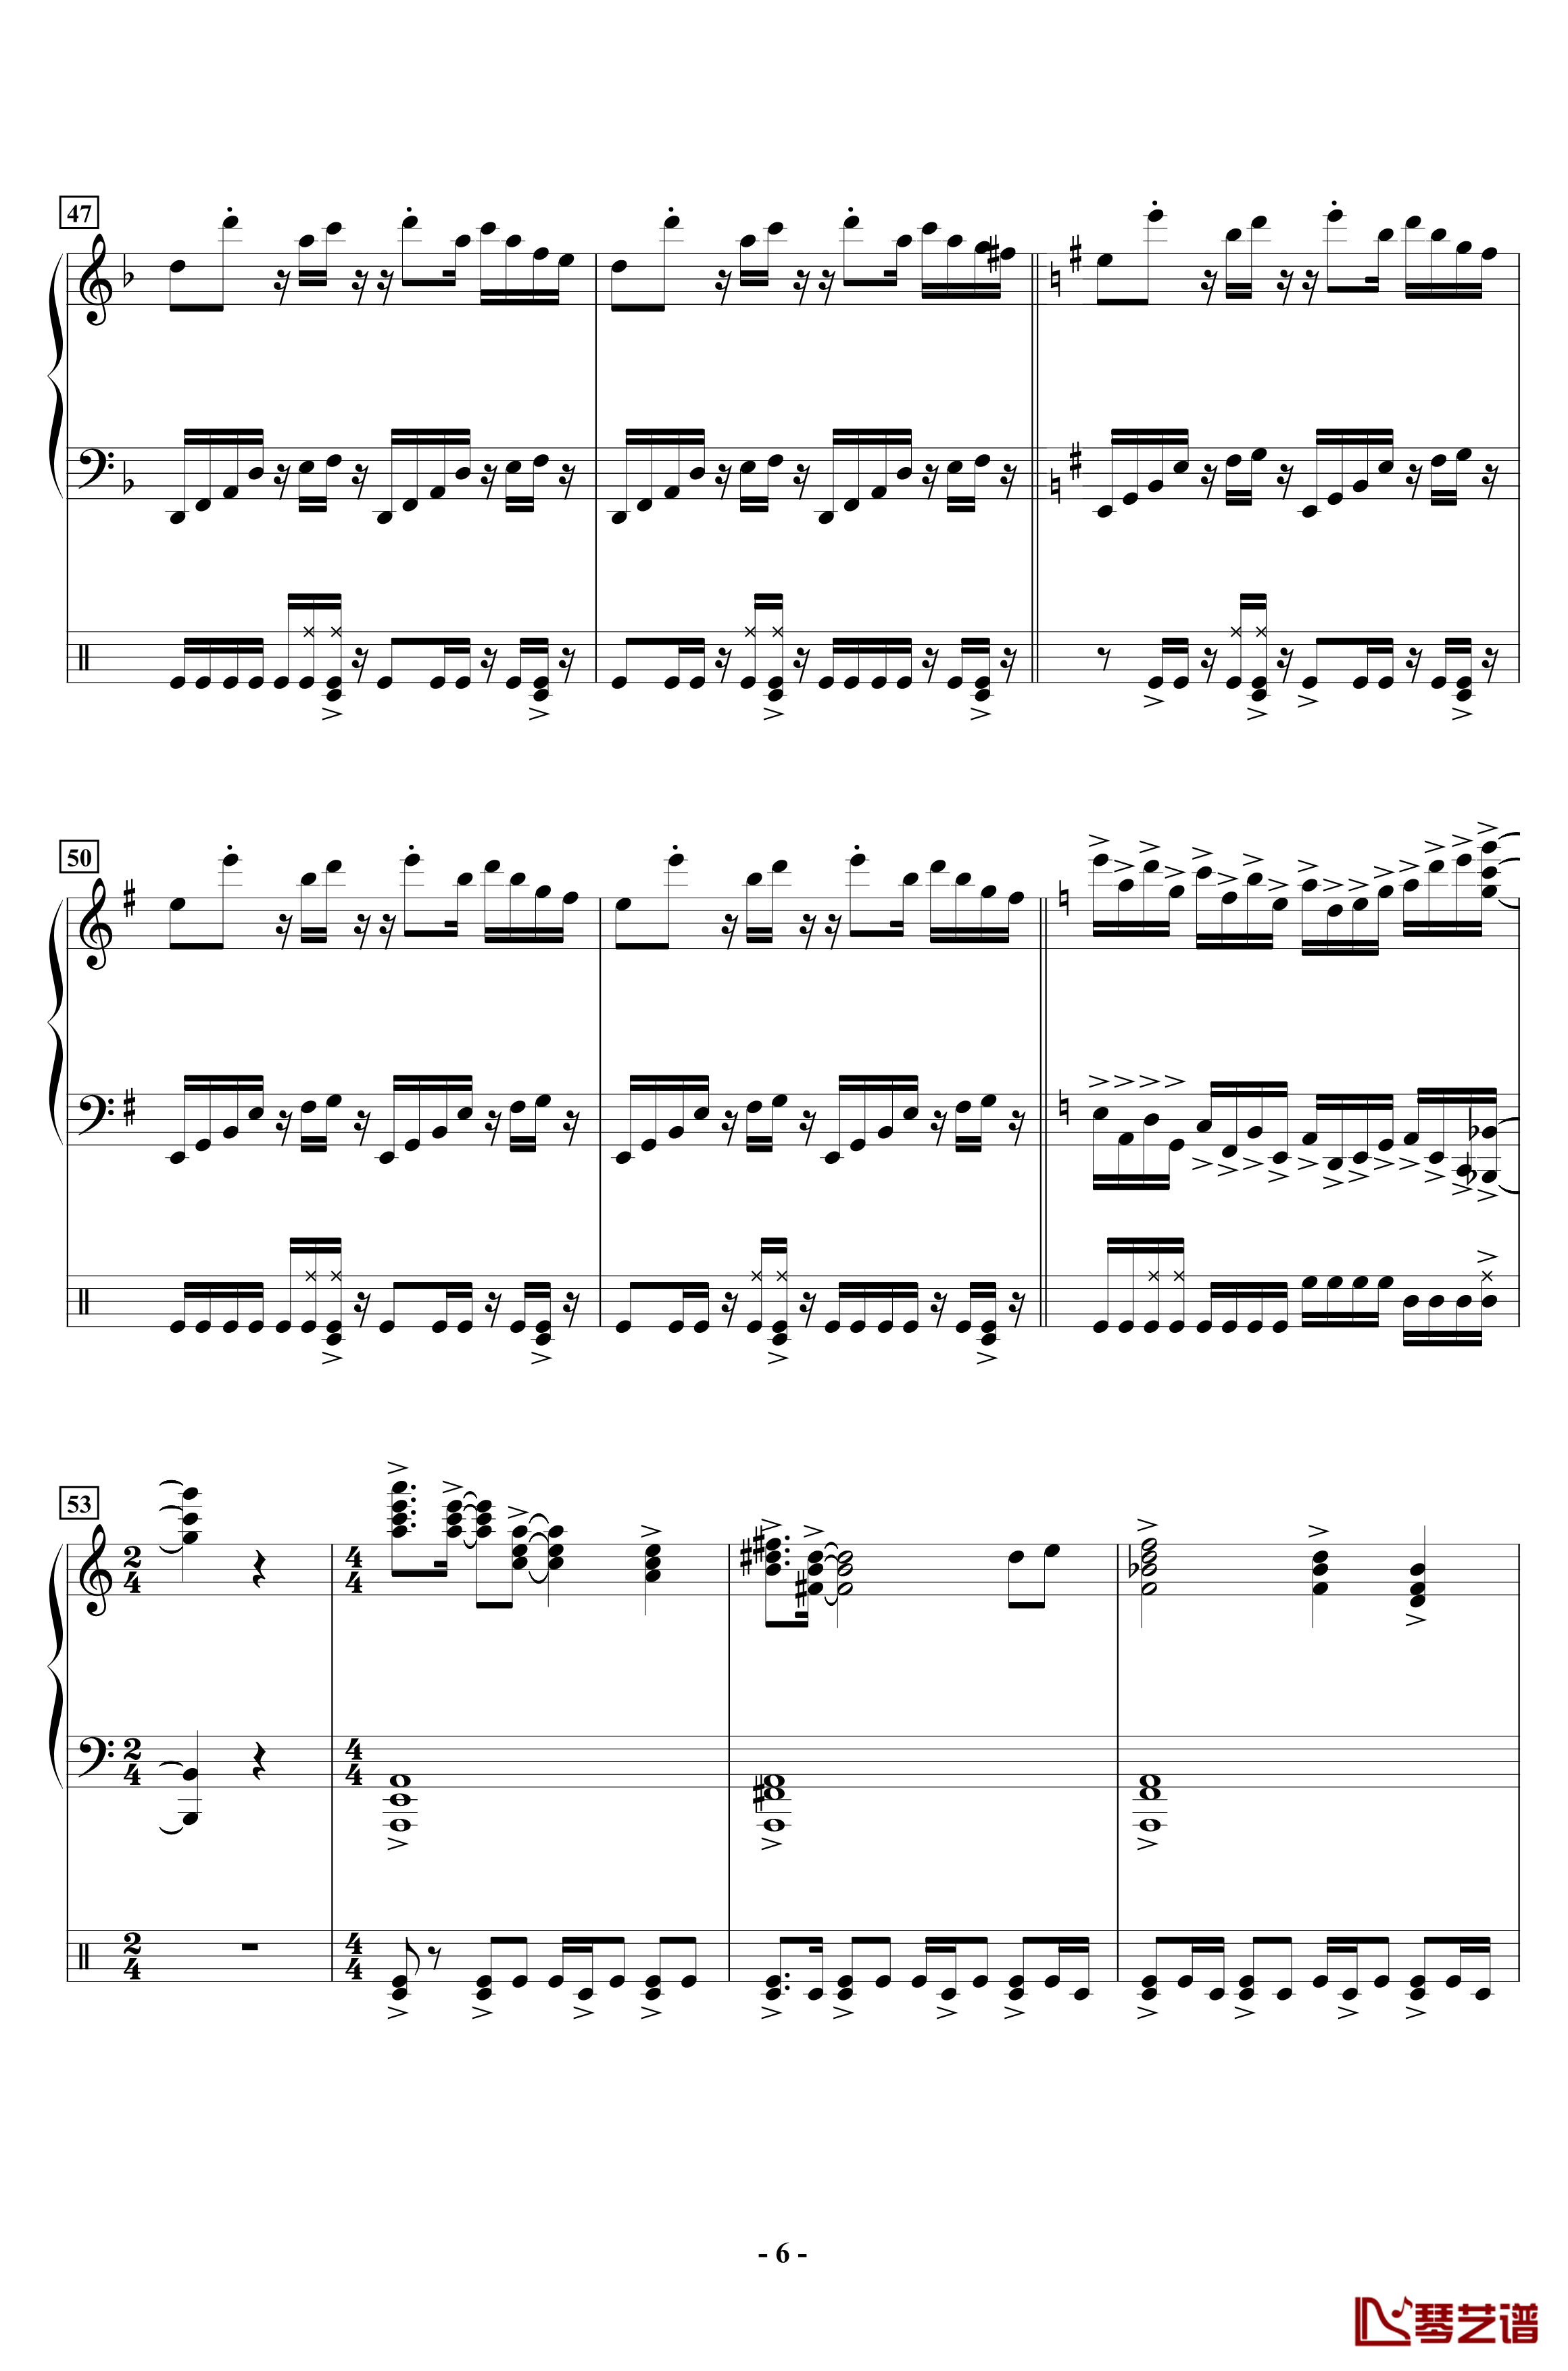 組曲の行方钢琴谱-H.B STUDIO6